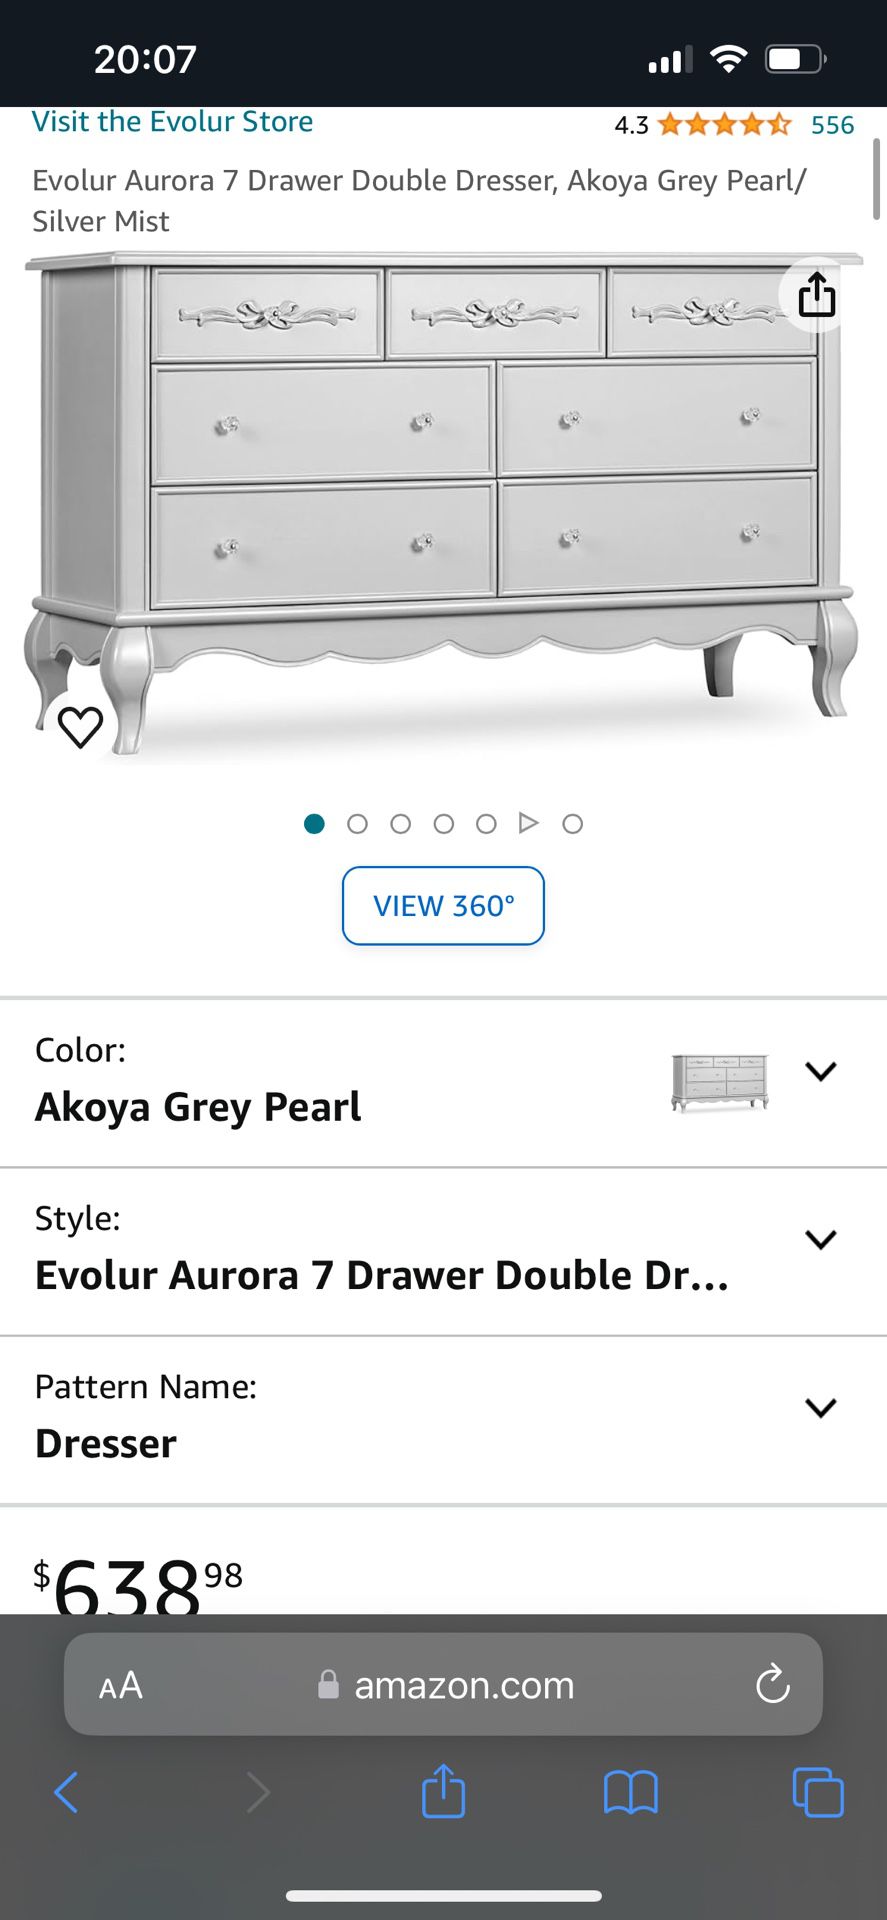 Evolur Aurora 7 Drawer Double Dresser 